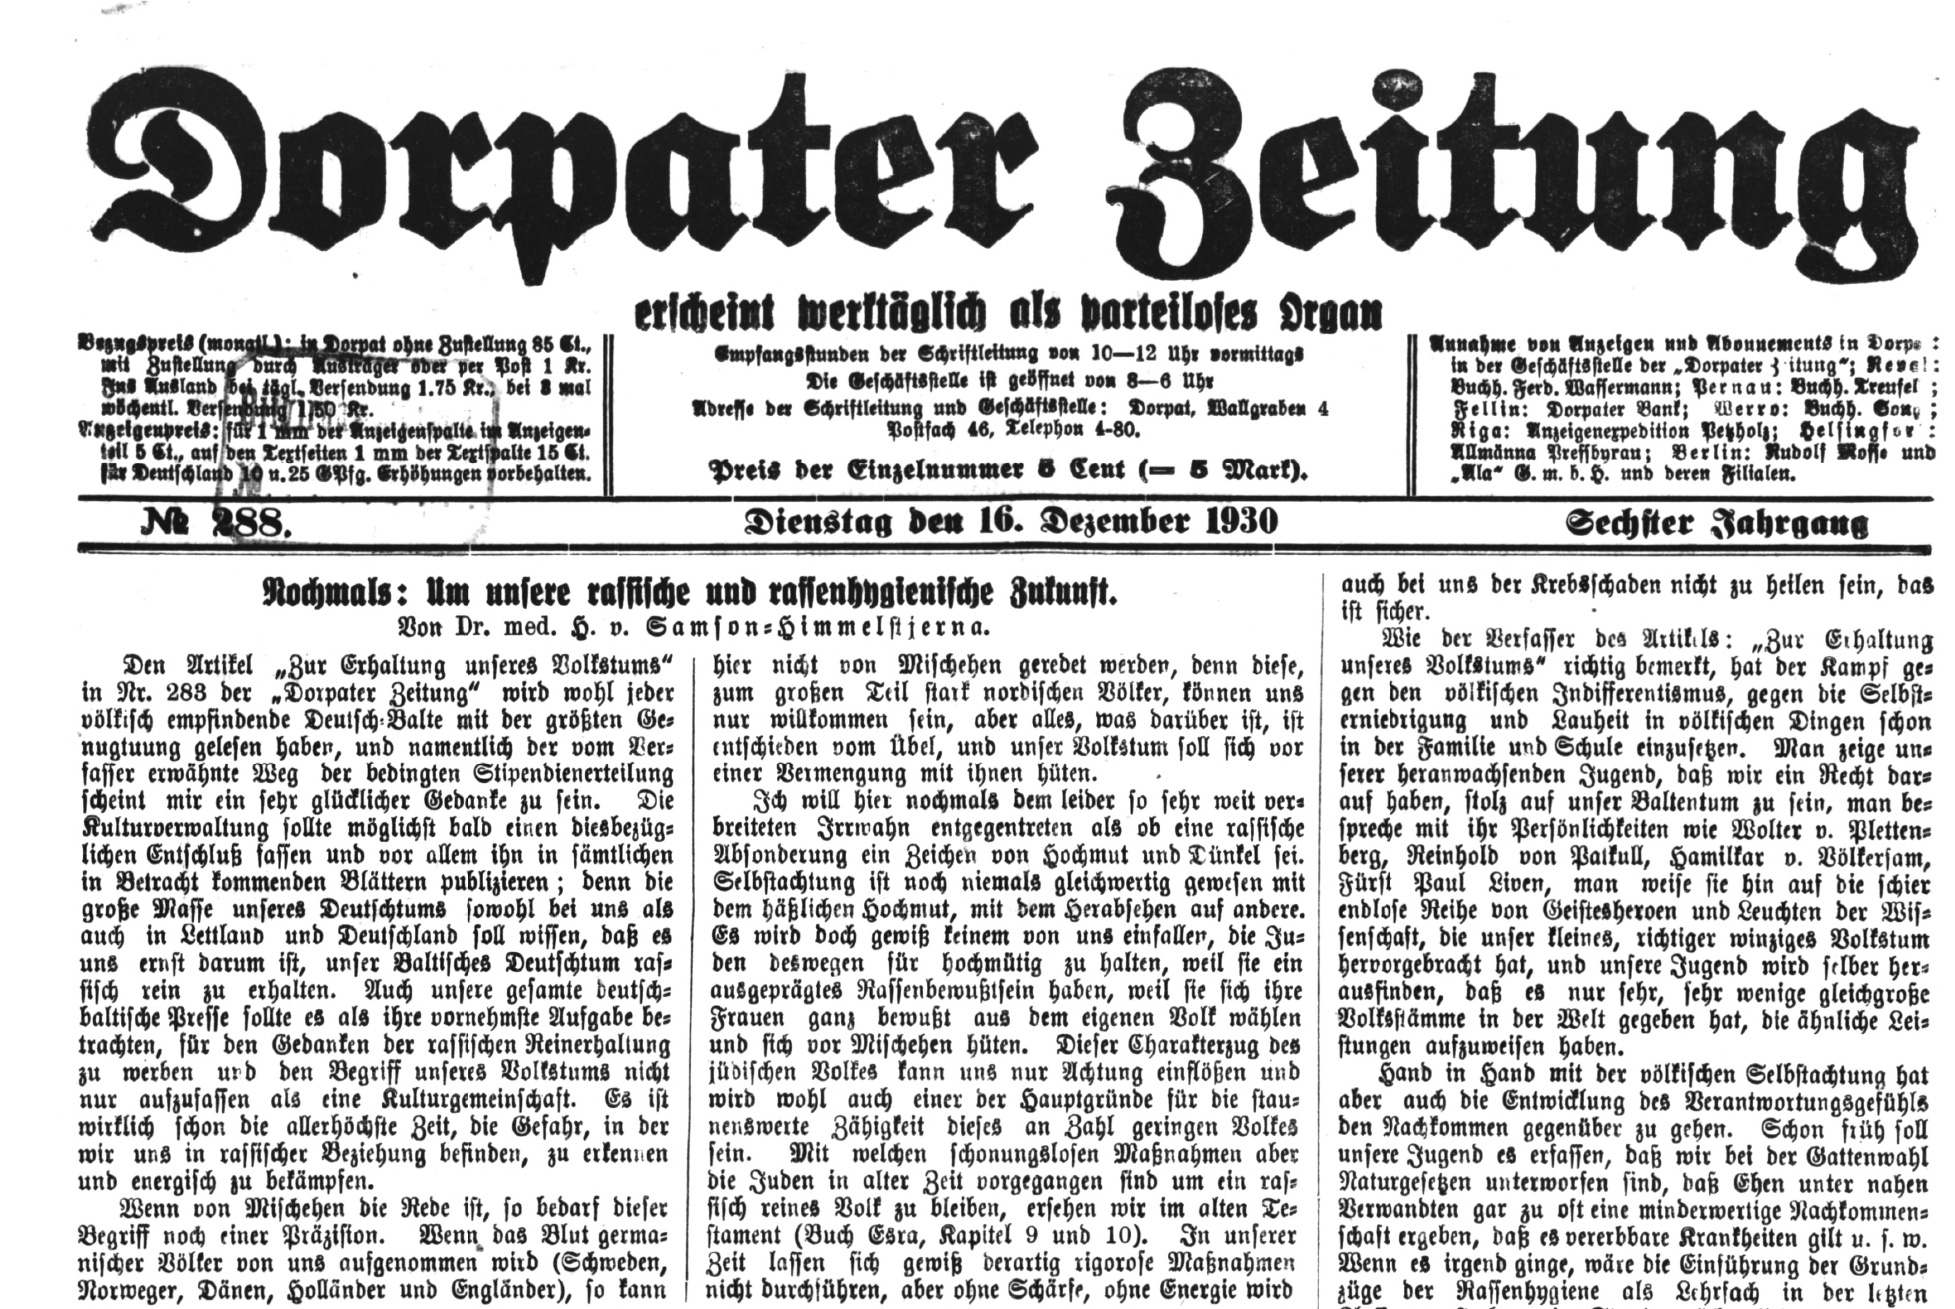 Dorpater Zeitung, 16.12.1930